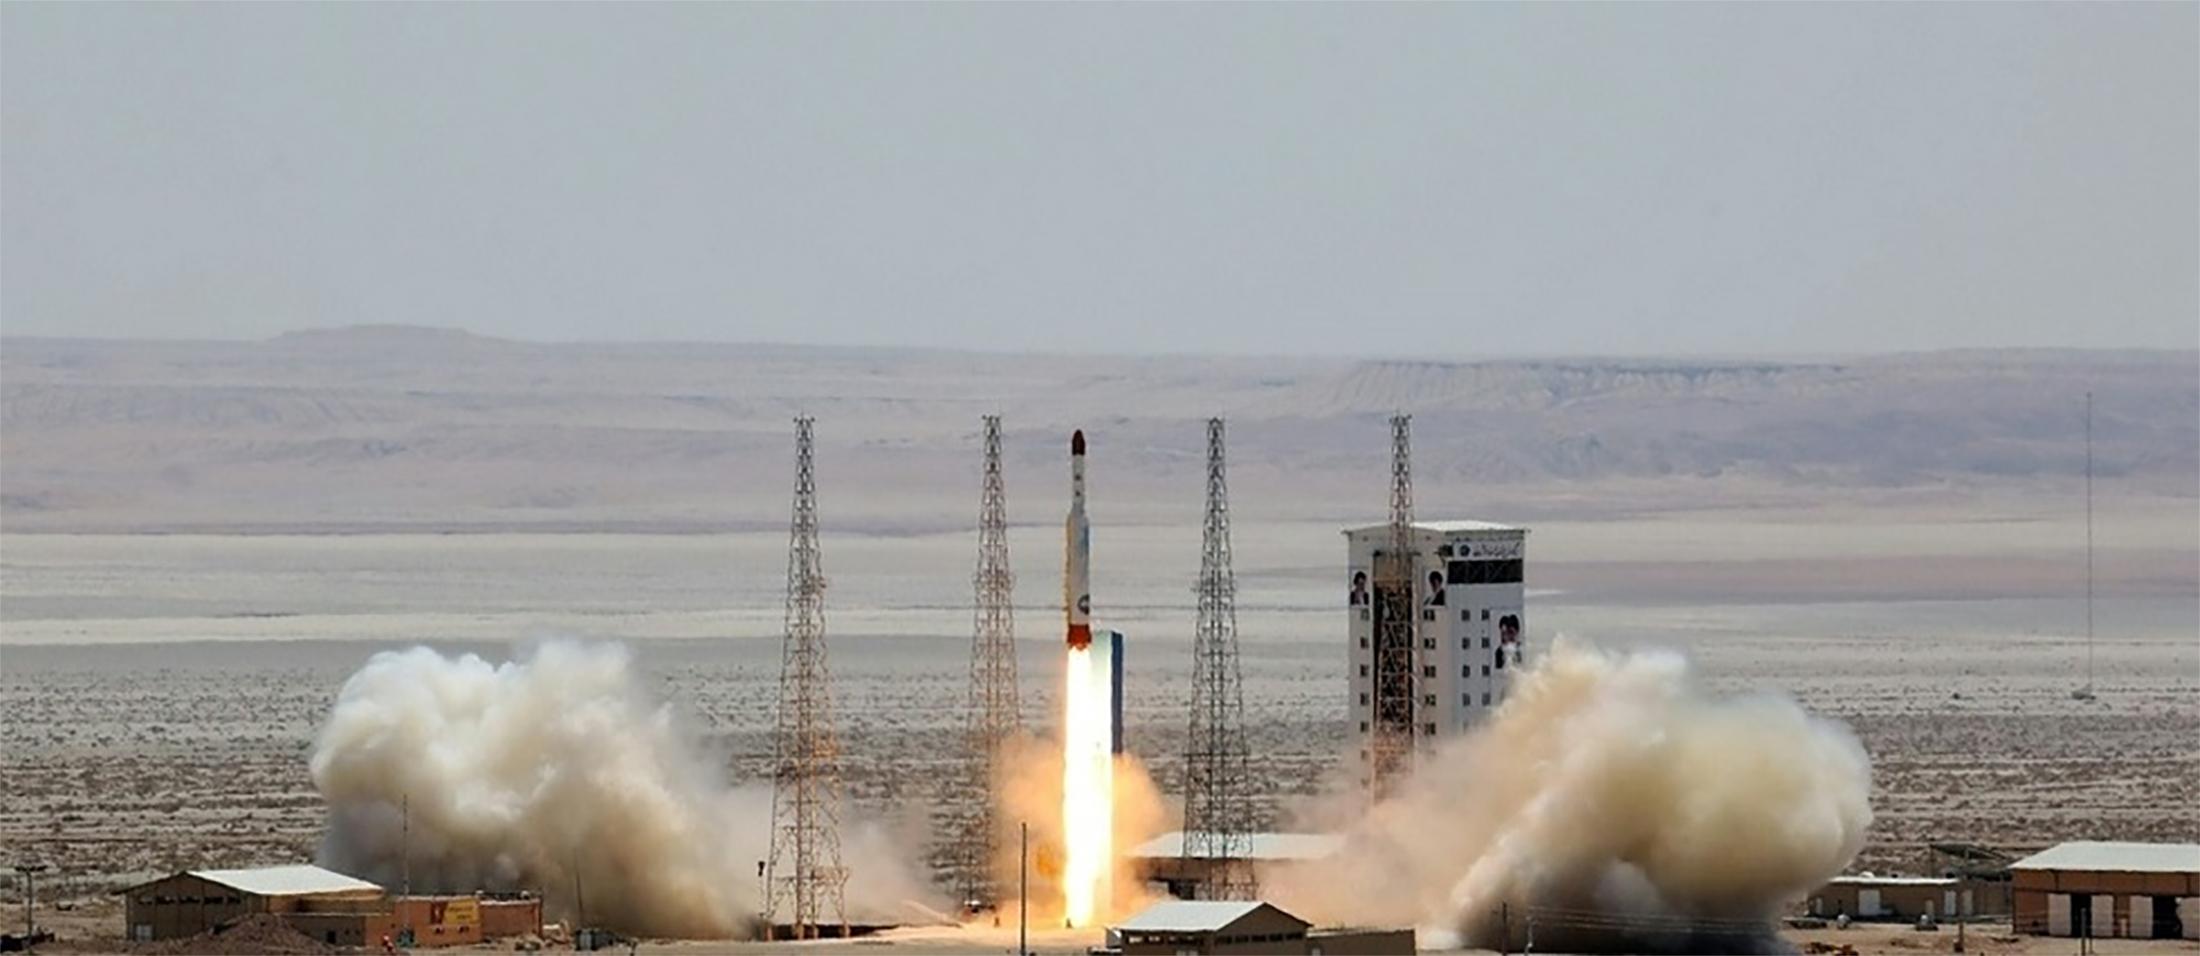 Lancement d'une fusée Simorgh dans un lieu non précisé, le 27 juillet 2017 en Iran. © HO, Ministère iranien de la Défense/AFP/Archives